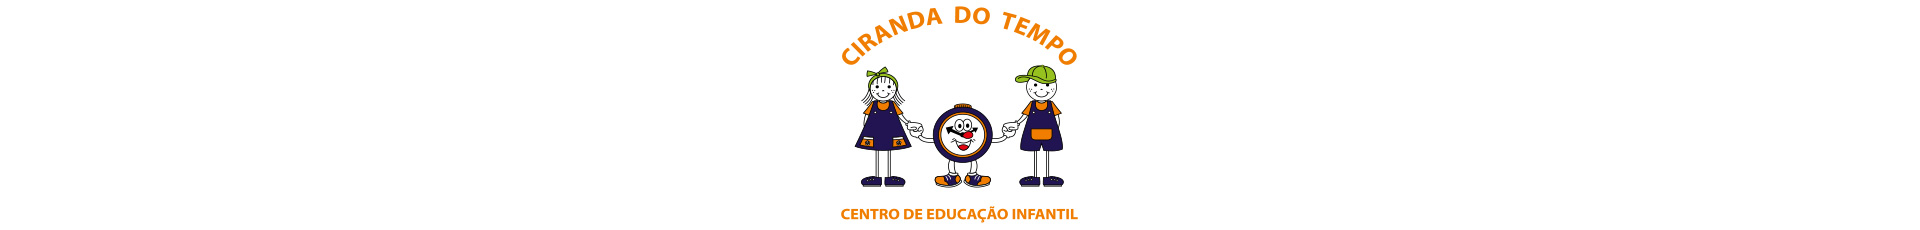 Banner Escola Ciranda do Tempo